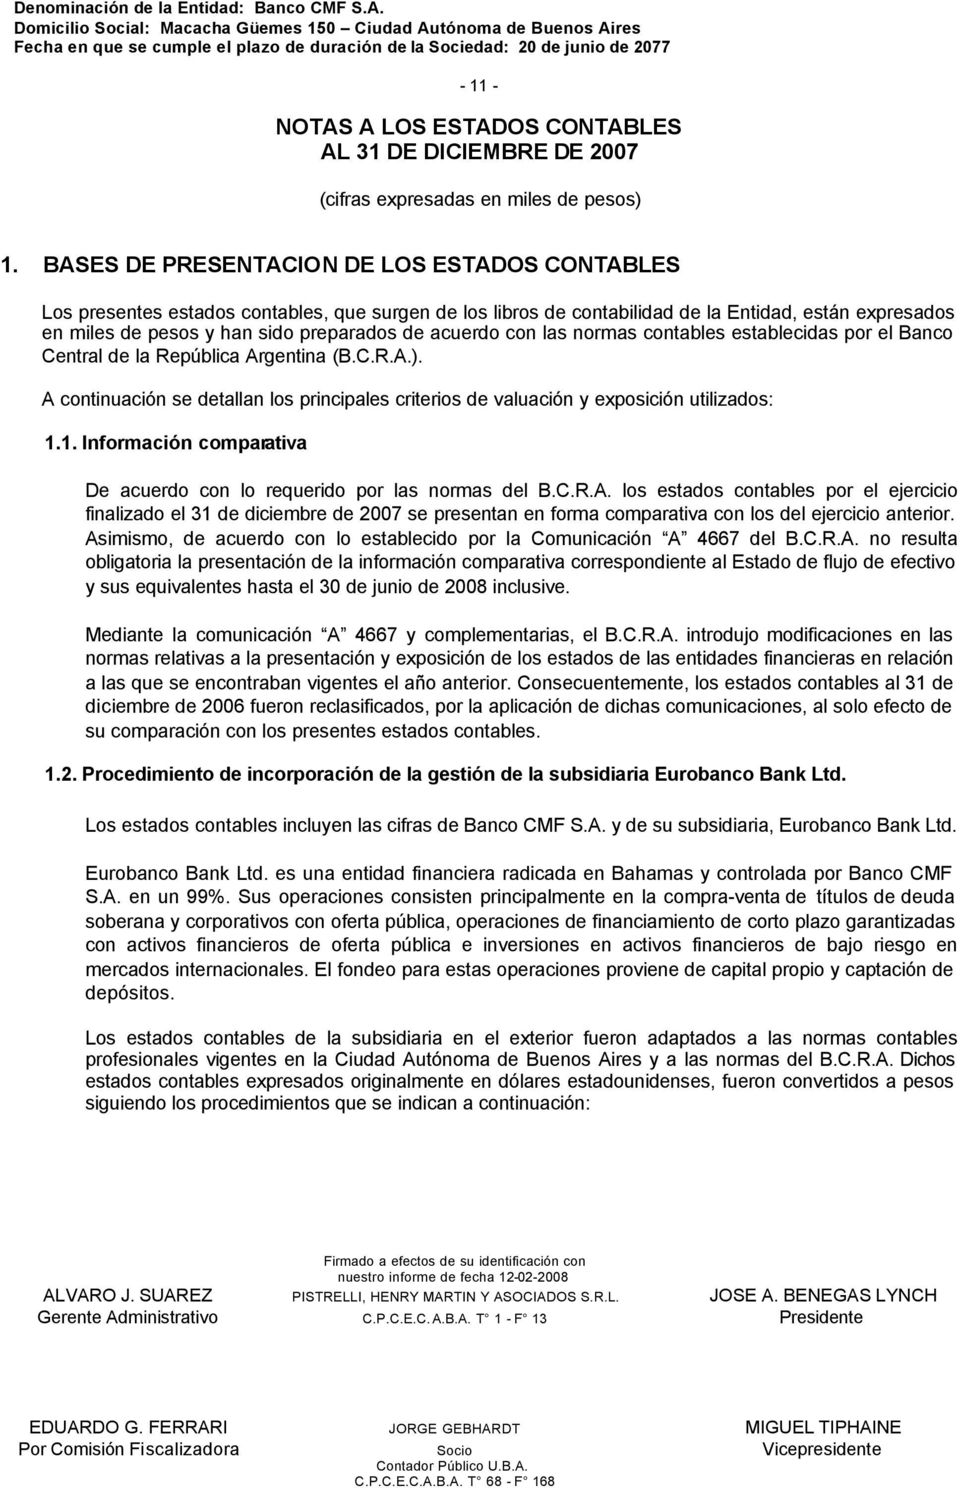 acuerdo con las normas contables establecidas por el Banco Central de la República Argentina (B.C.R.A.). A continuación se detallan los principales criterios de valuación y exposición utilizados: 1.